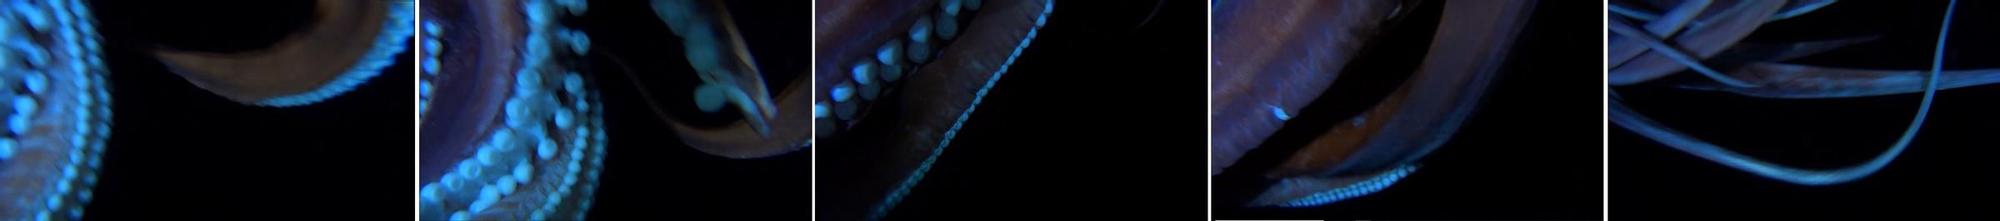 Capturas del vídeo donde se puede ver al Calamar Gigante